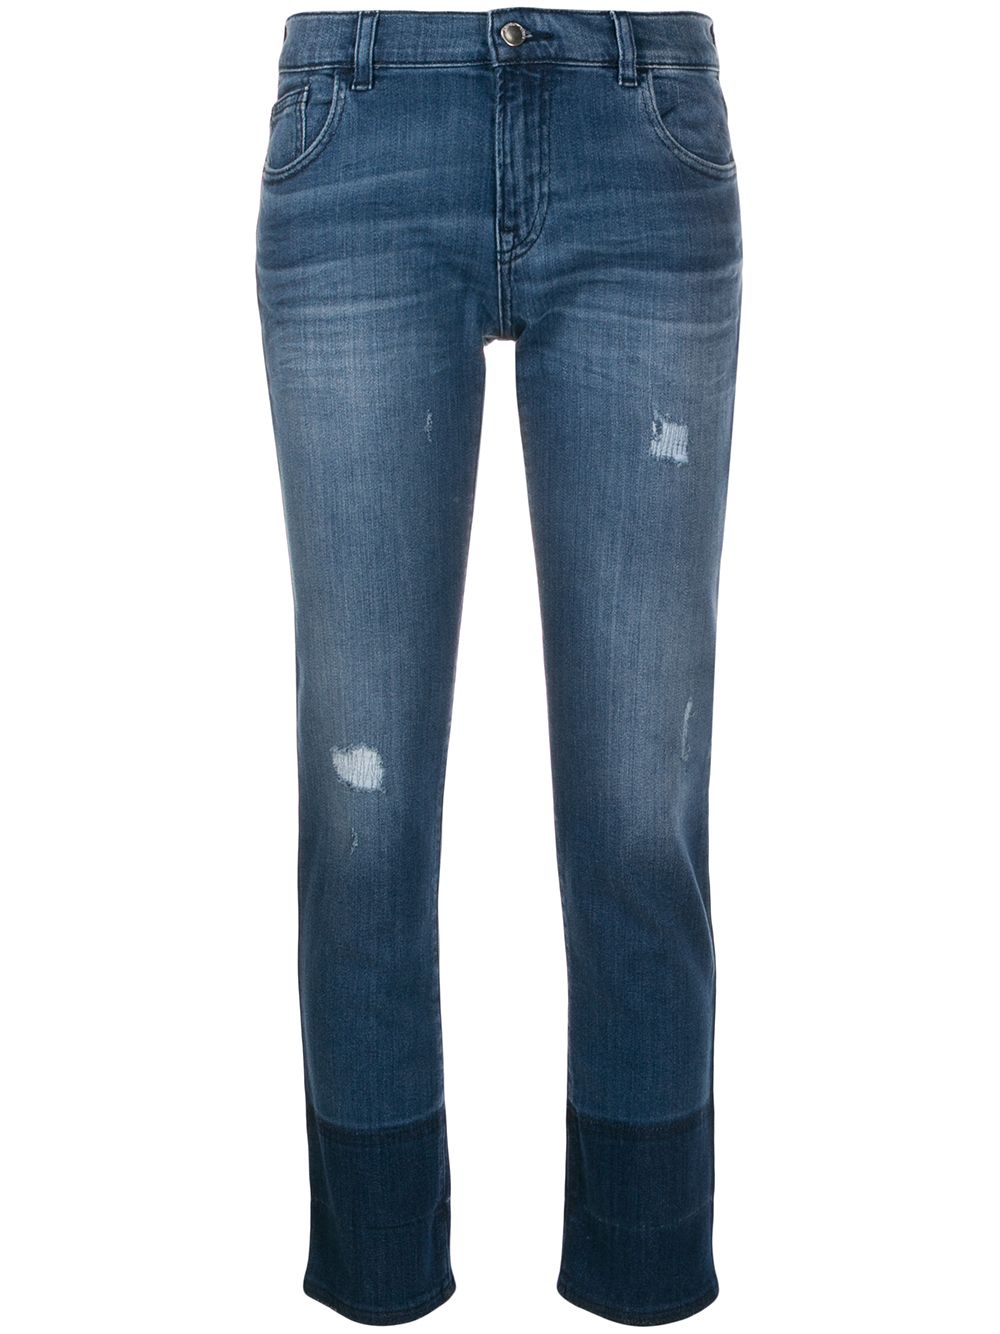 фото Emporio Armani двухцветные джинсы скинни